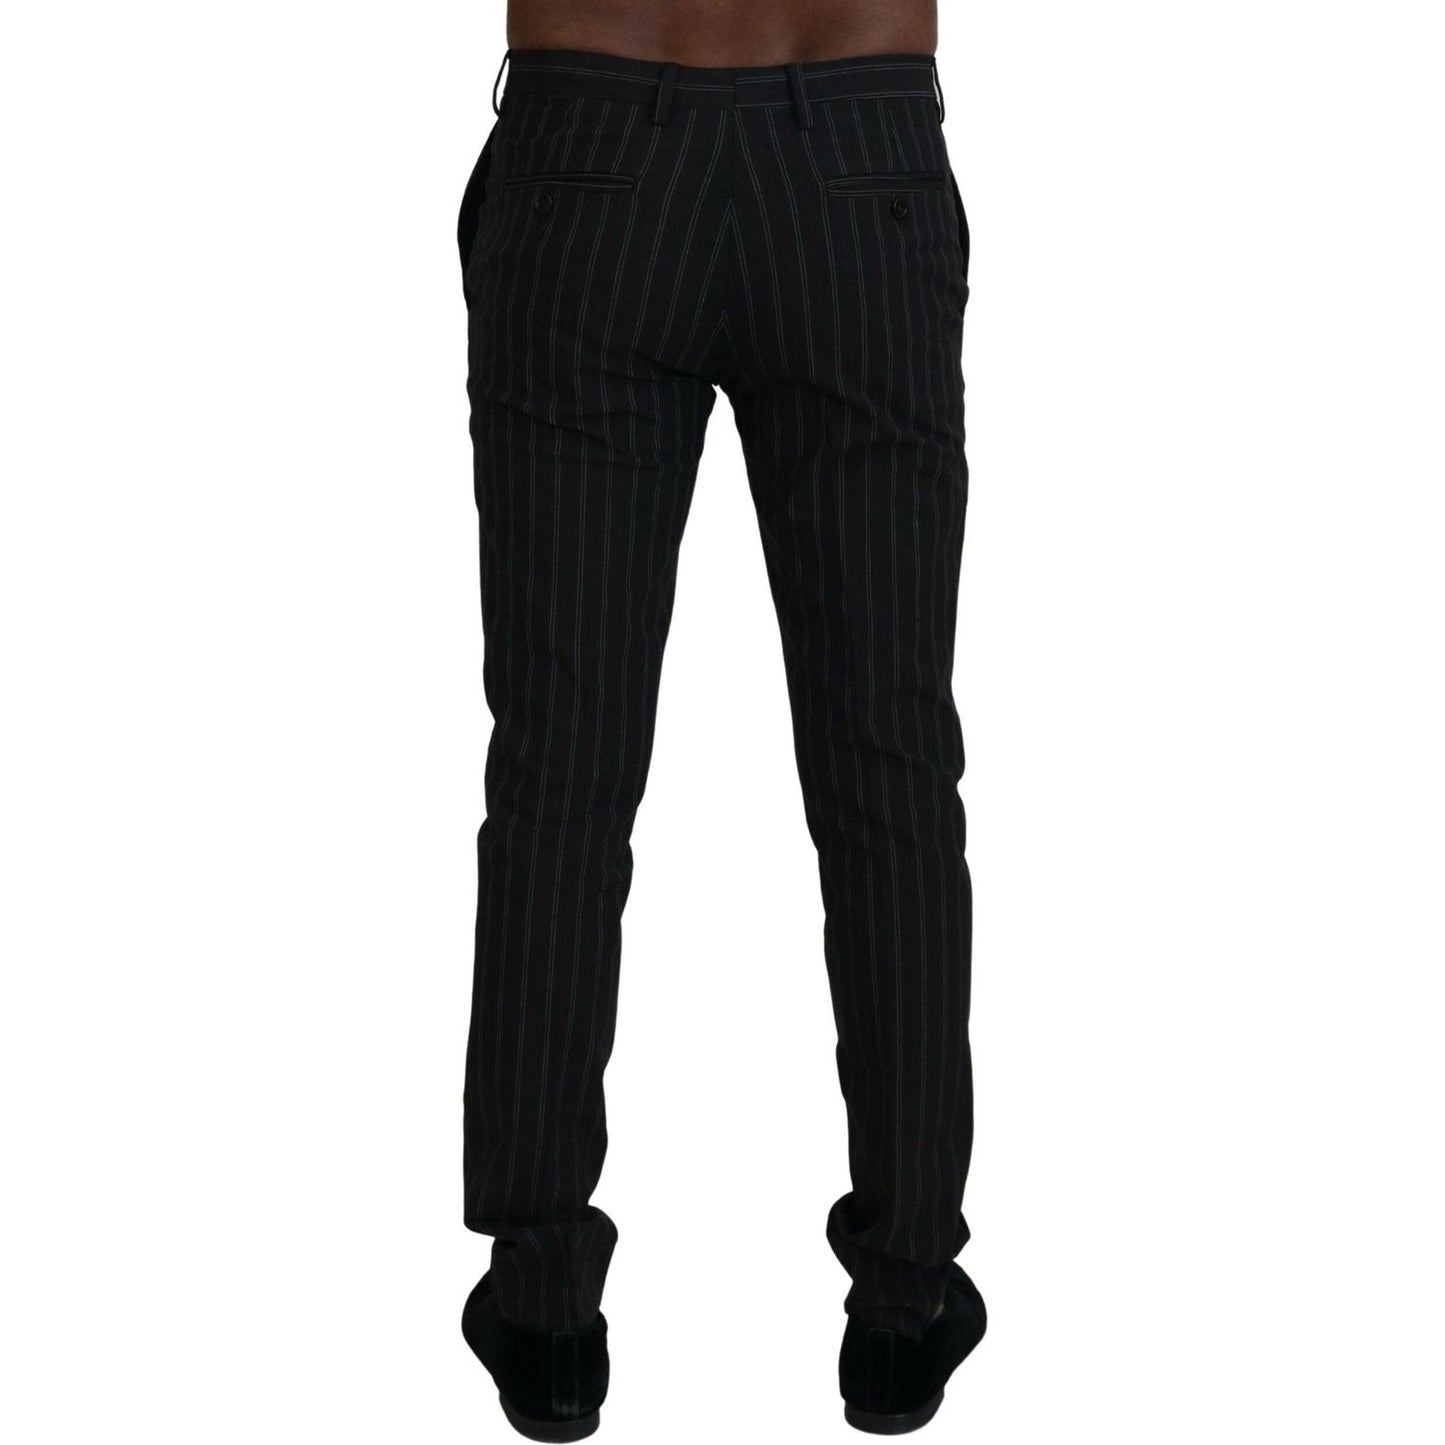 BENCIVENGA Elegant Striped Viscose Dress Pants for Men black-stripes-viscose-dress-pants